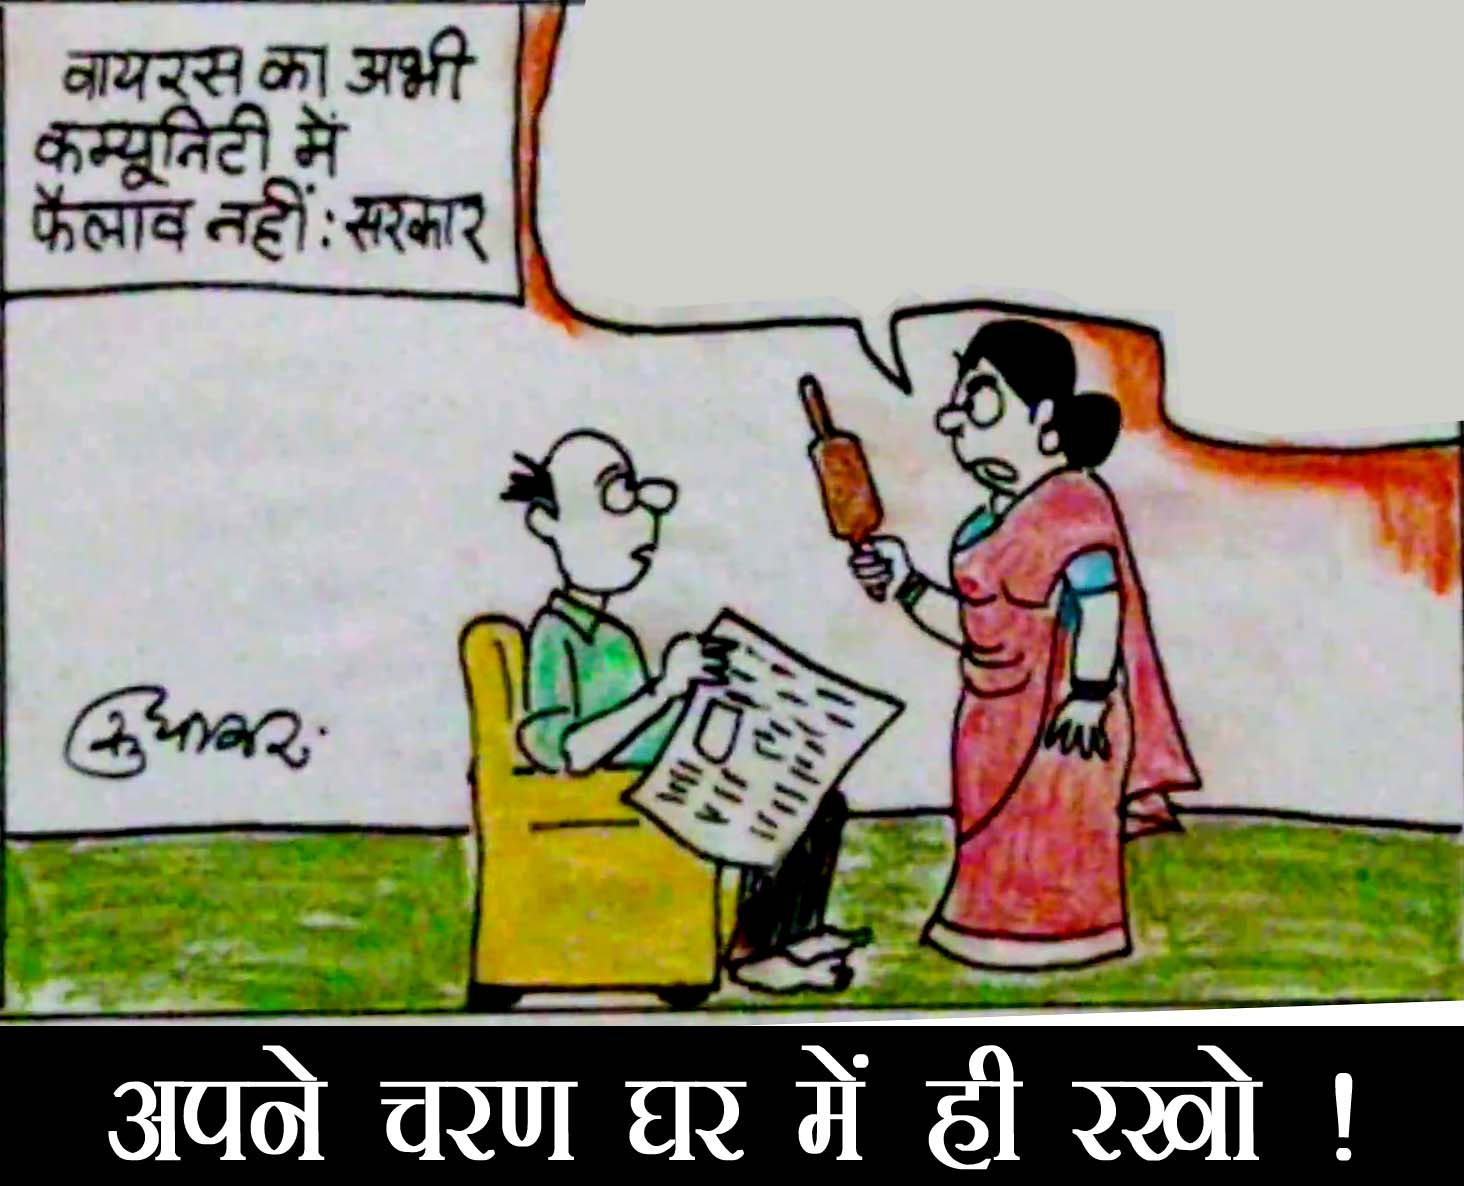 पत्नी अपने पति को चरण घर में रखने की दे रही हिदायत देखिए इस मसले पर कार्टूनिस्ट सुधाकर का नजरिया